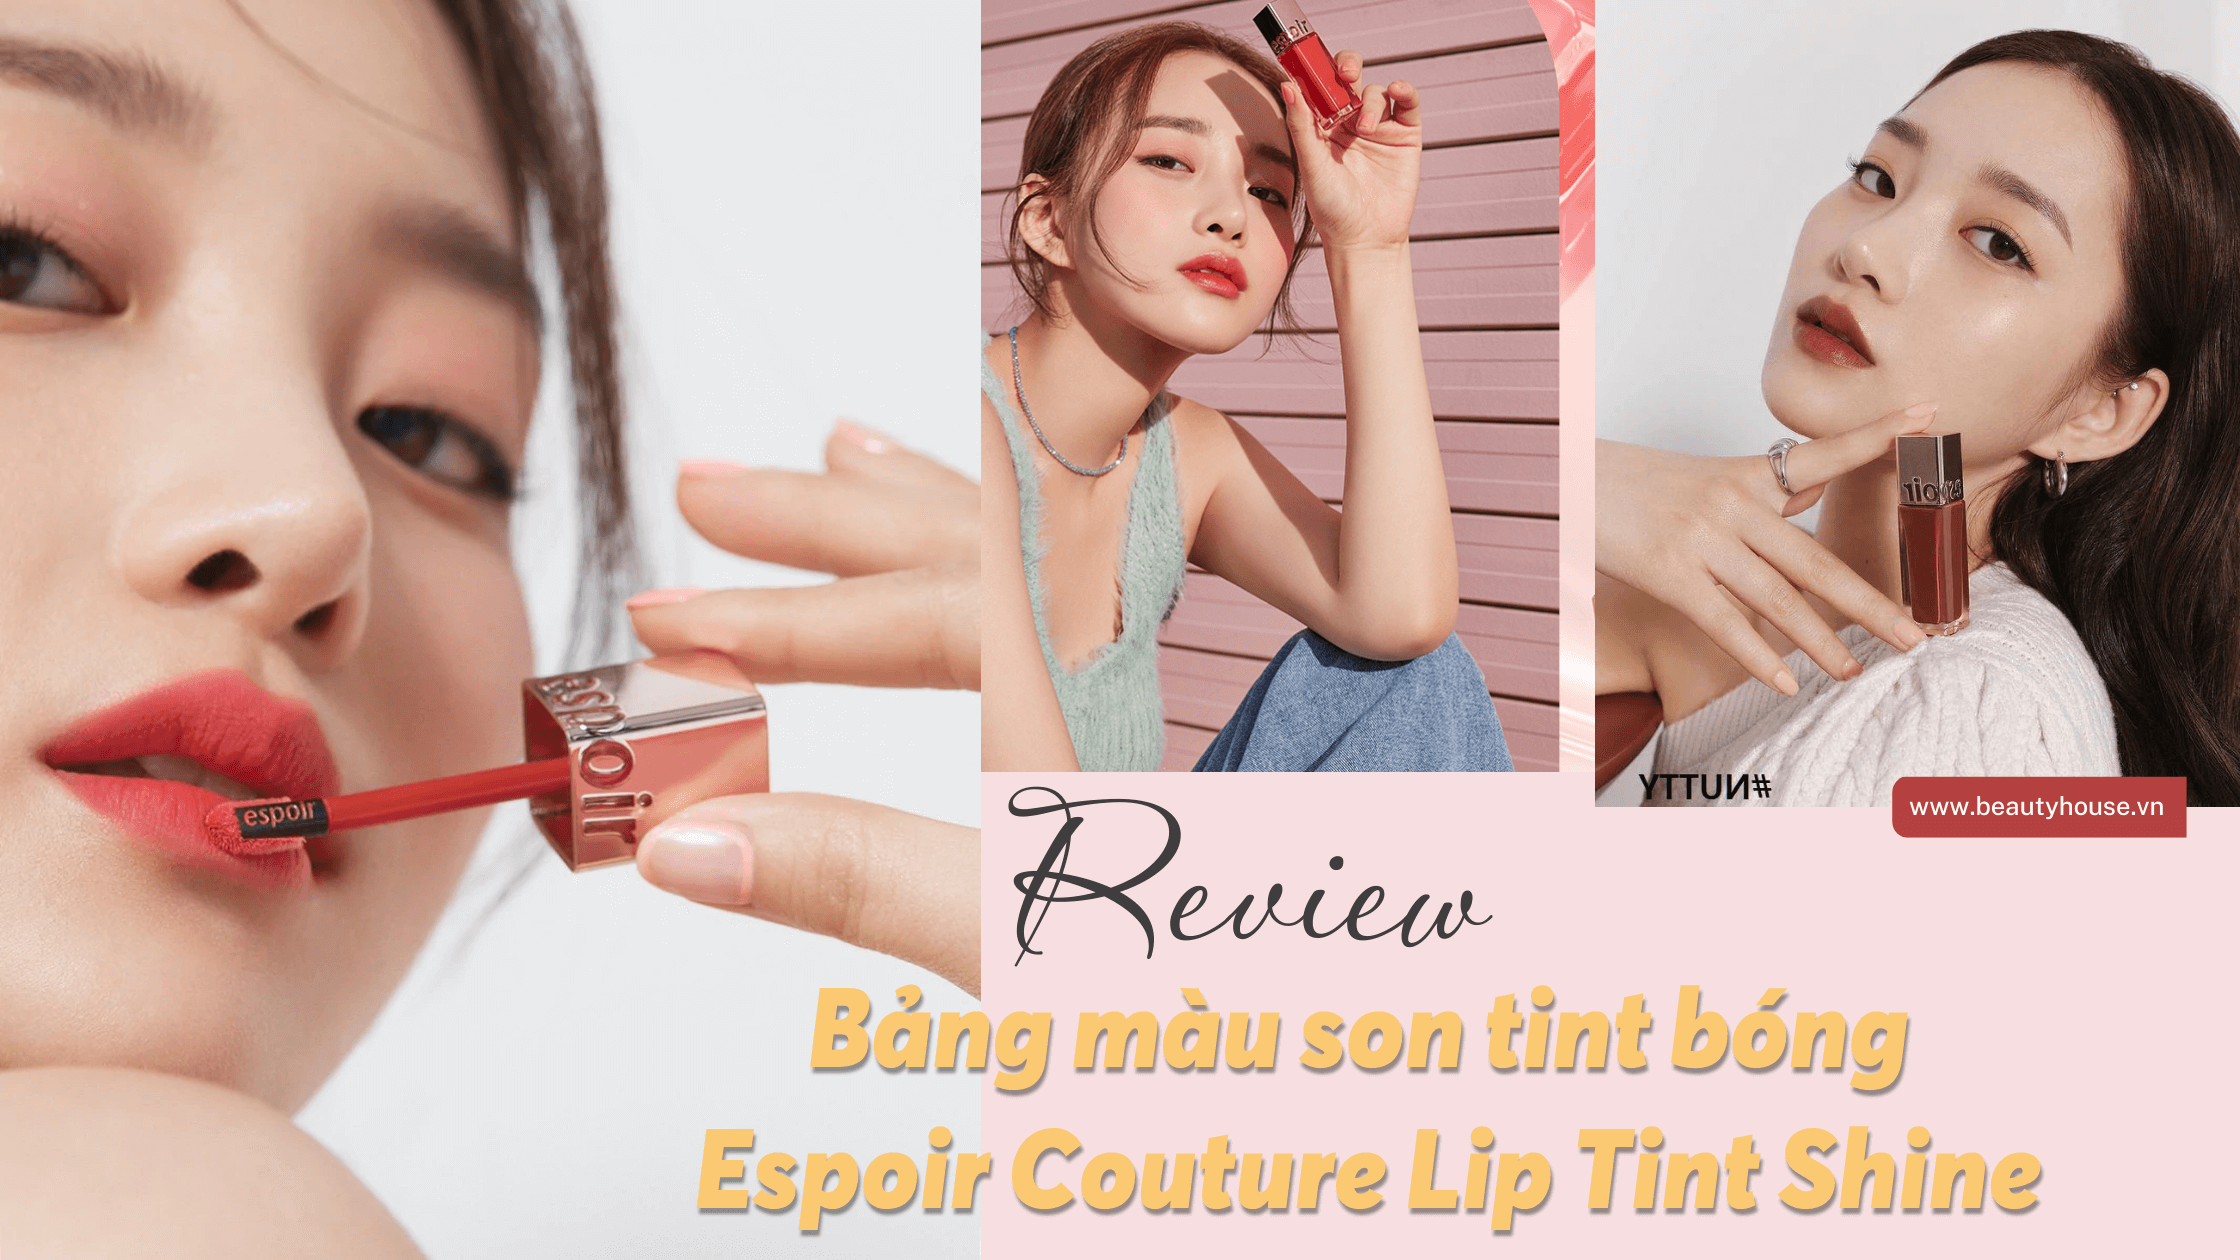 Review bảng màu son tint bóng Espoir Couture Lip Tint Shine cực hot Tiktok khiến các nàng mê đắm | Beautyhouse